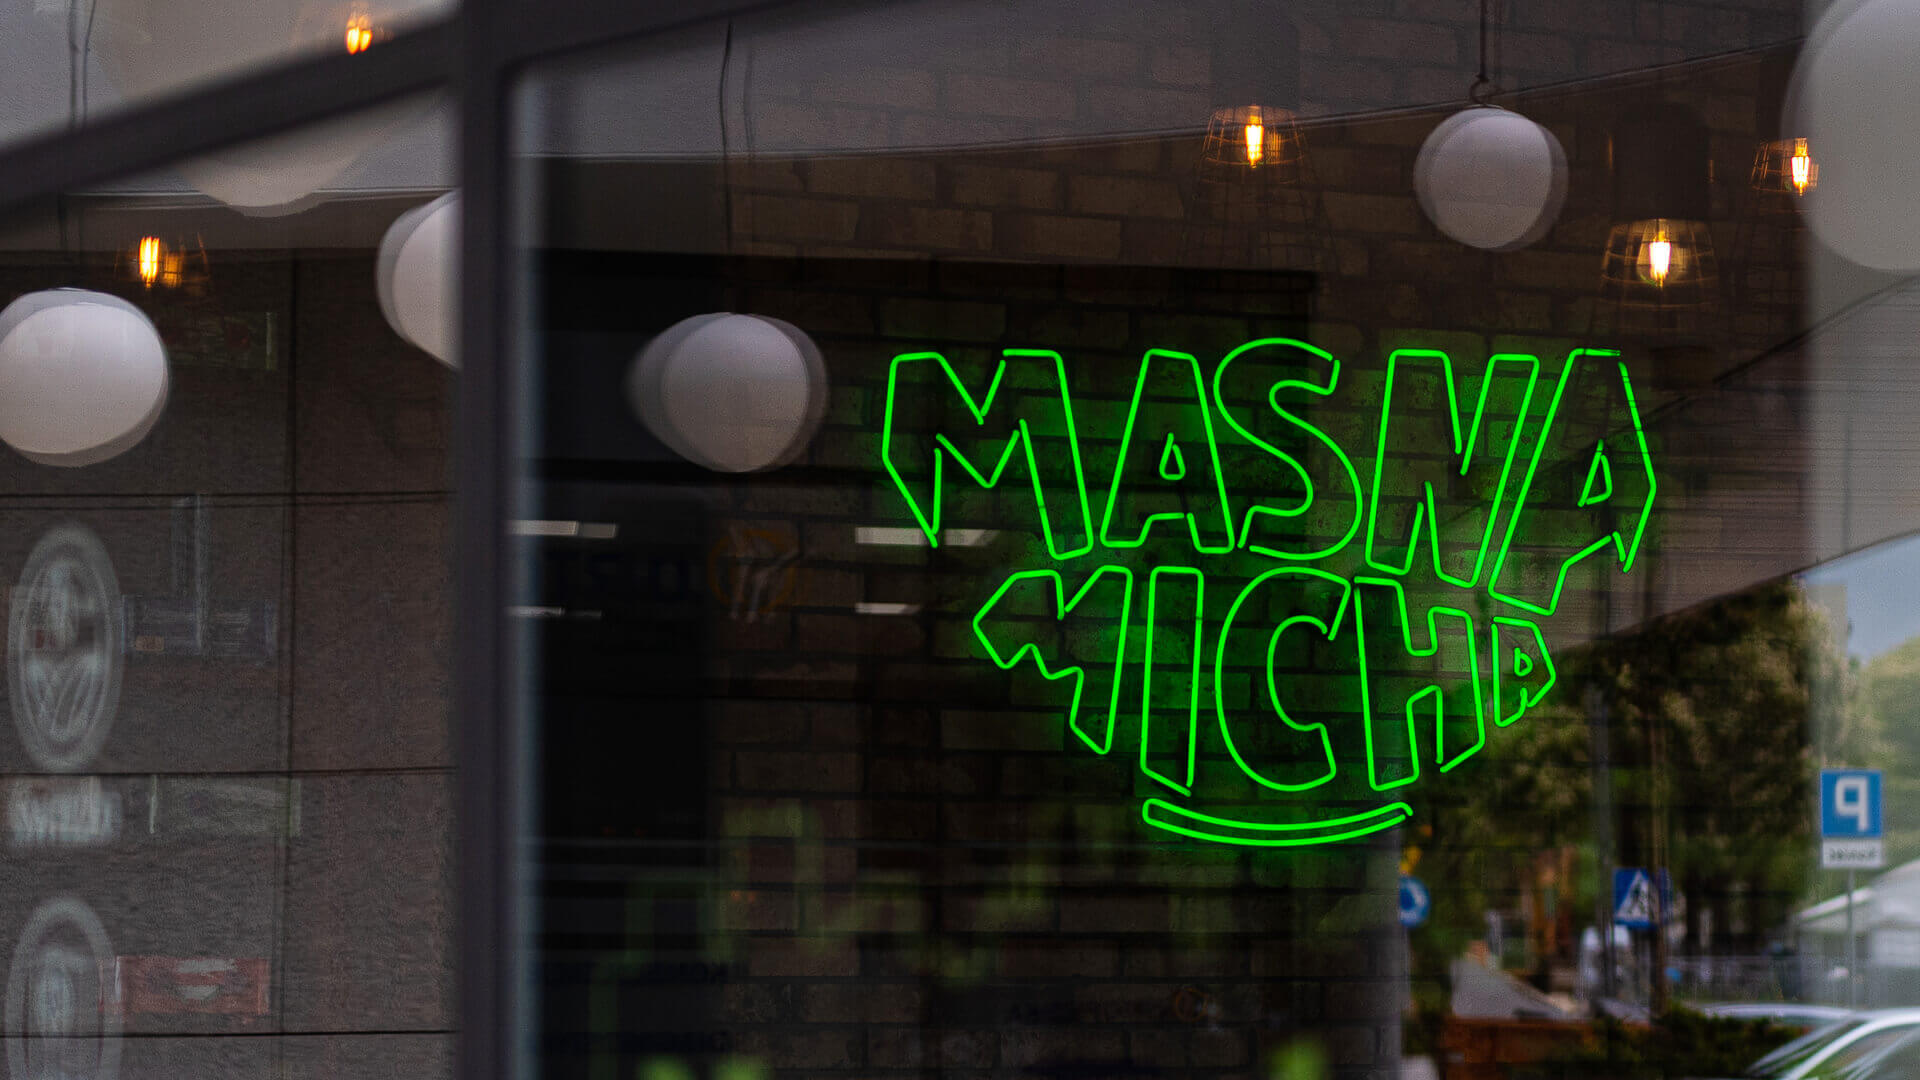 Masna Micha - Neonschild für das Restaurant Masna Micha in Danzig, im Inneren des Lokals.